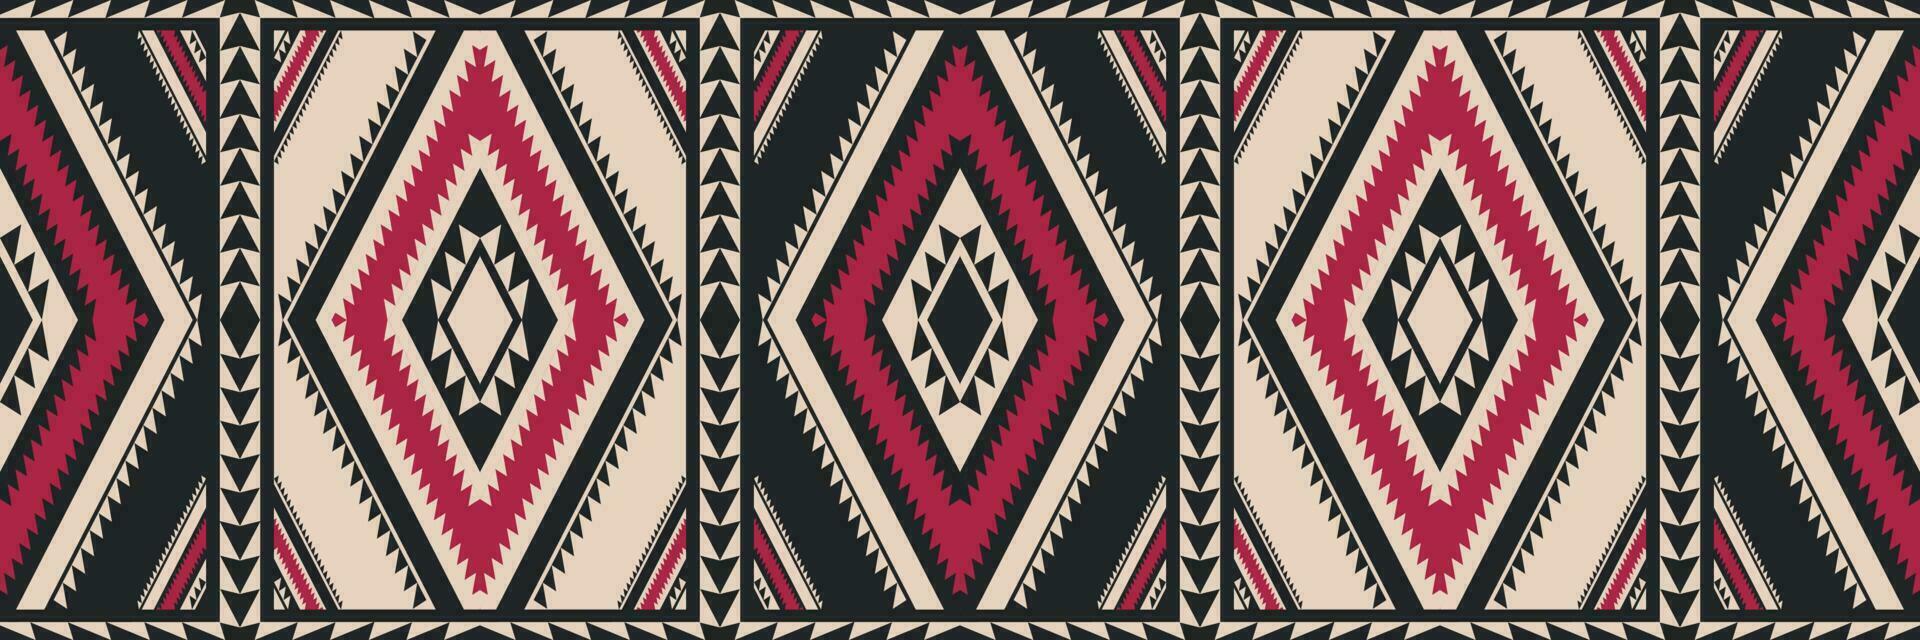 etnisch zuidwesten wijnoogst patroon. etnisch meetkundig plein ruit kleurrijk wijnoogst naadloos patroon. aztec kilim patroon gebruik voor tapijt, tapijt, tapijtwerk, mat, loper of grens decoratief element. vector